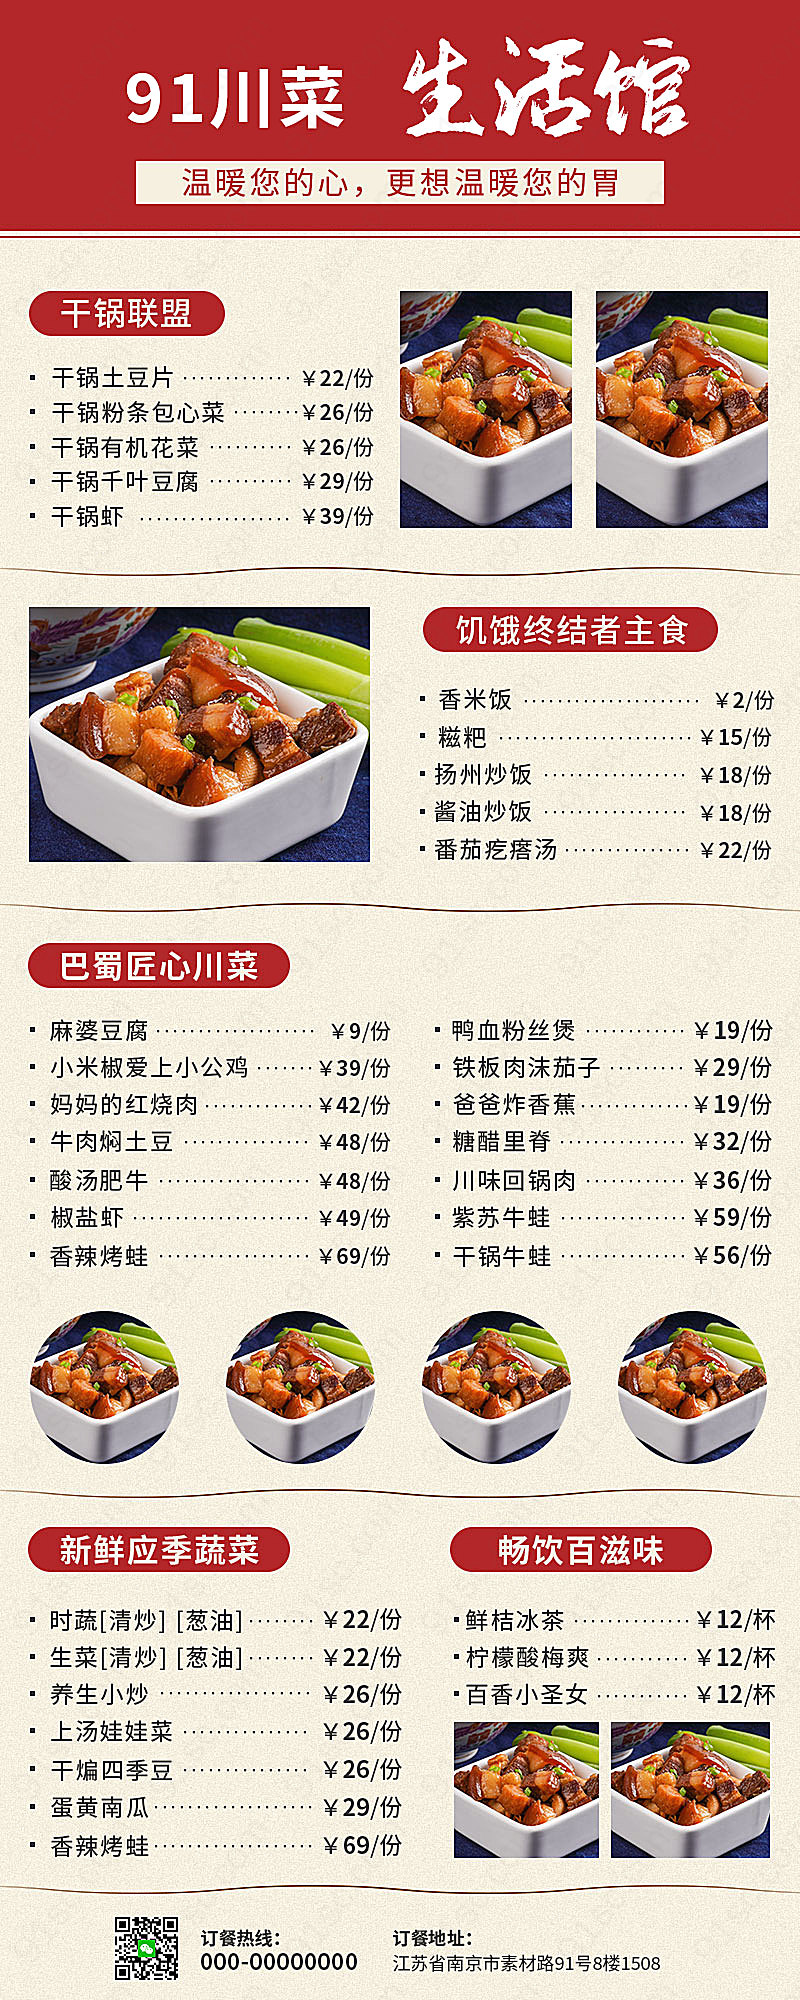 电子食品菜单手机应用川菜系列展示长图长图海报手机营销图新媒体用图下载